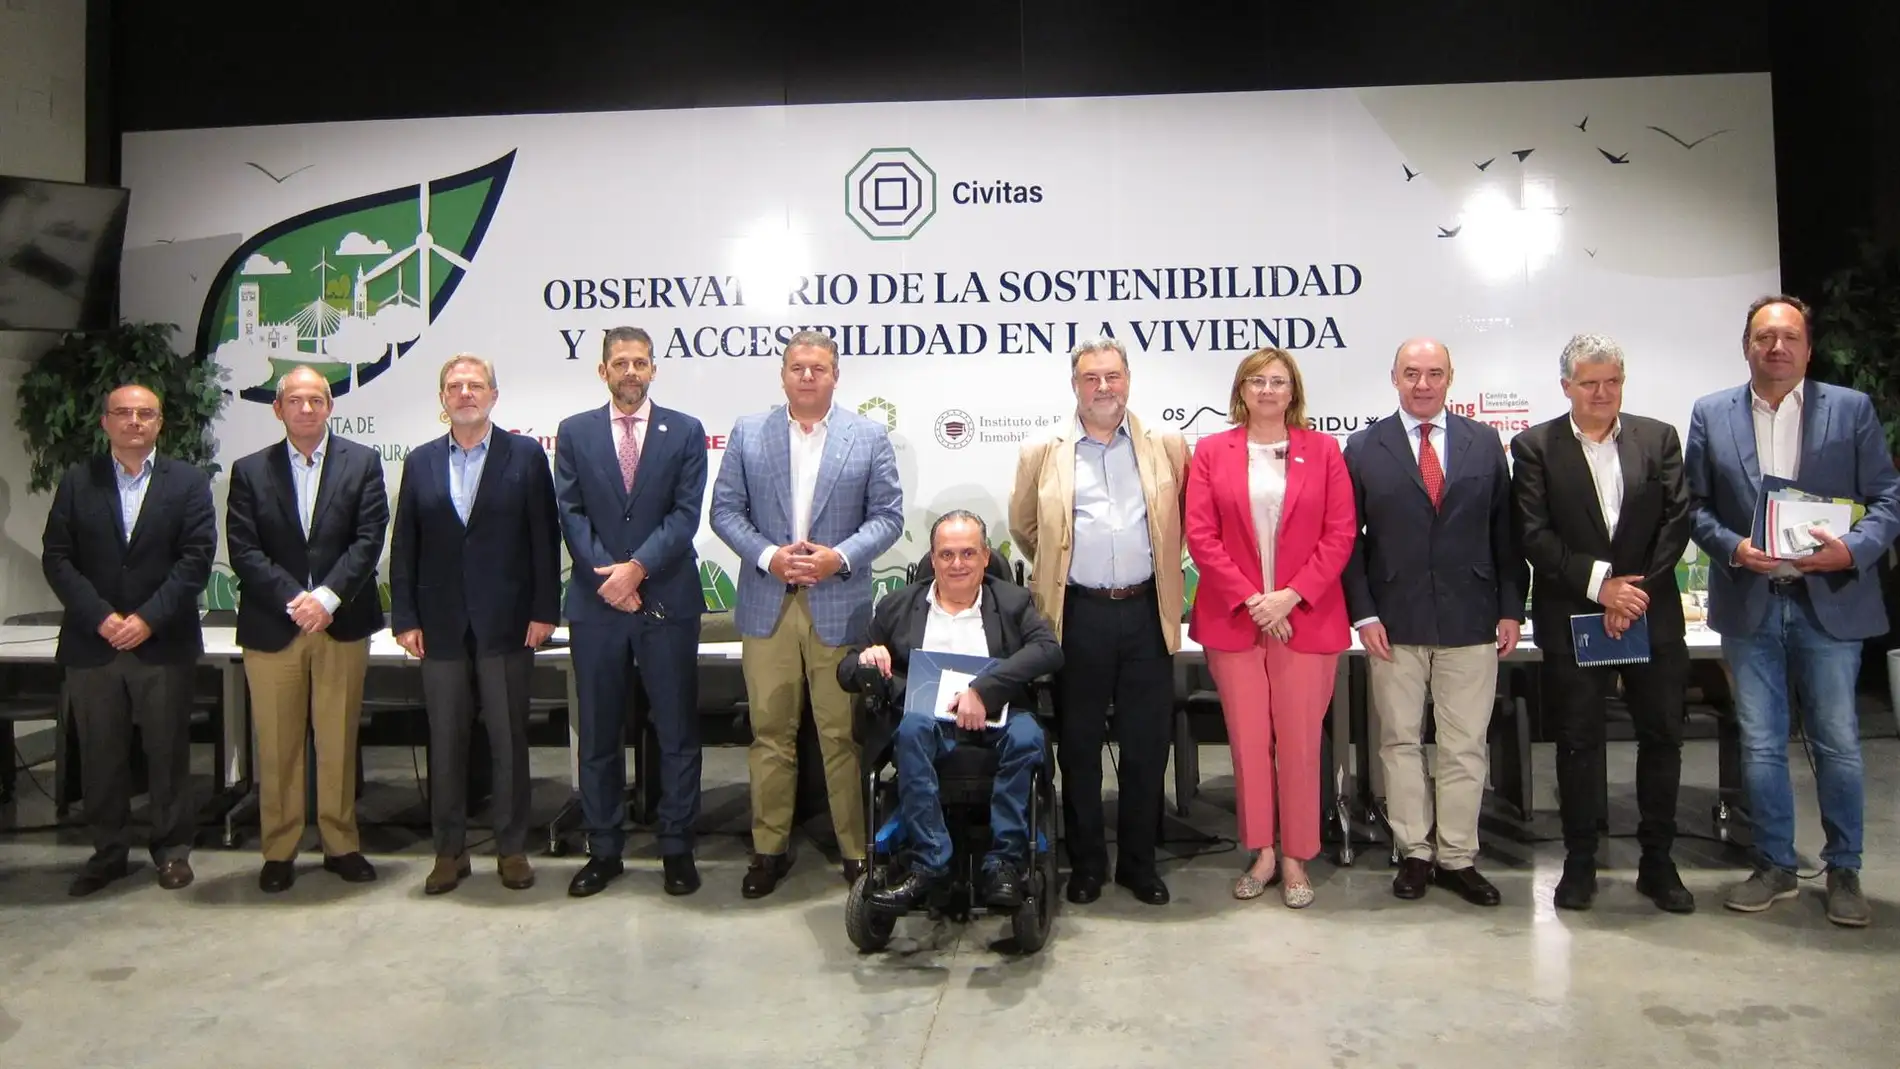 El Observatorio de la Sostenibilidad y la Accesibilidad en la Vivienda celebra en Badajoz su reunión constituyente